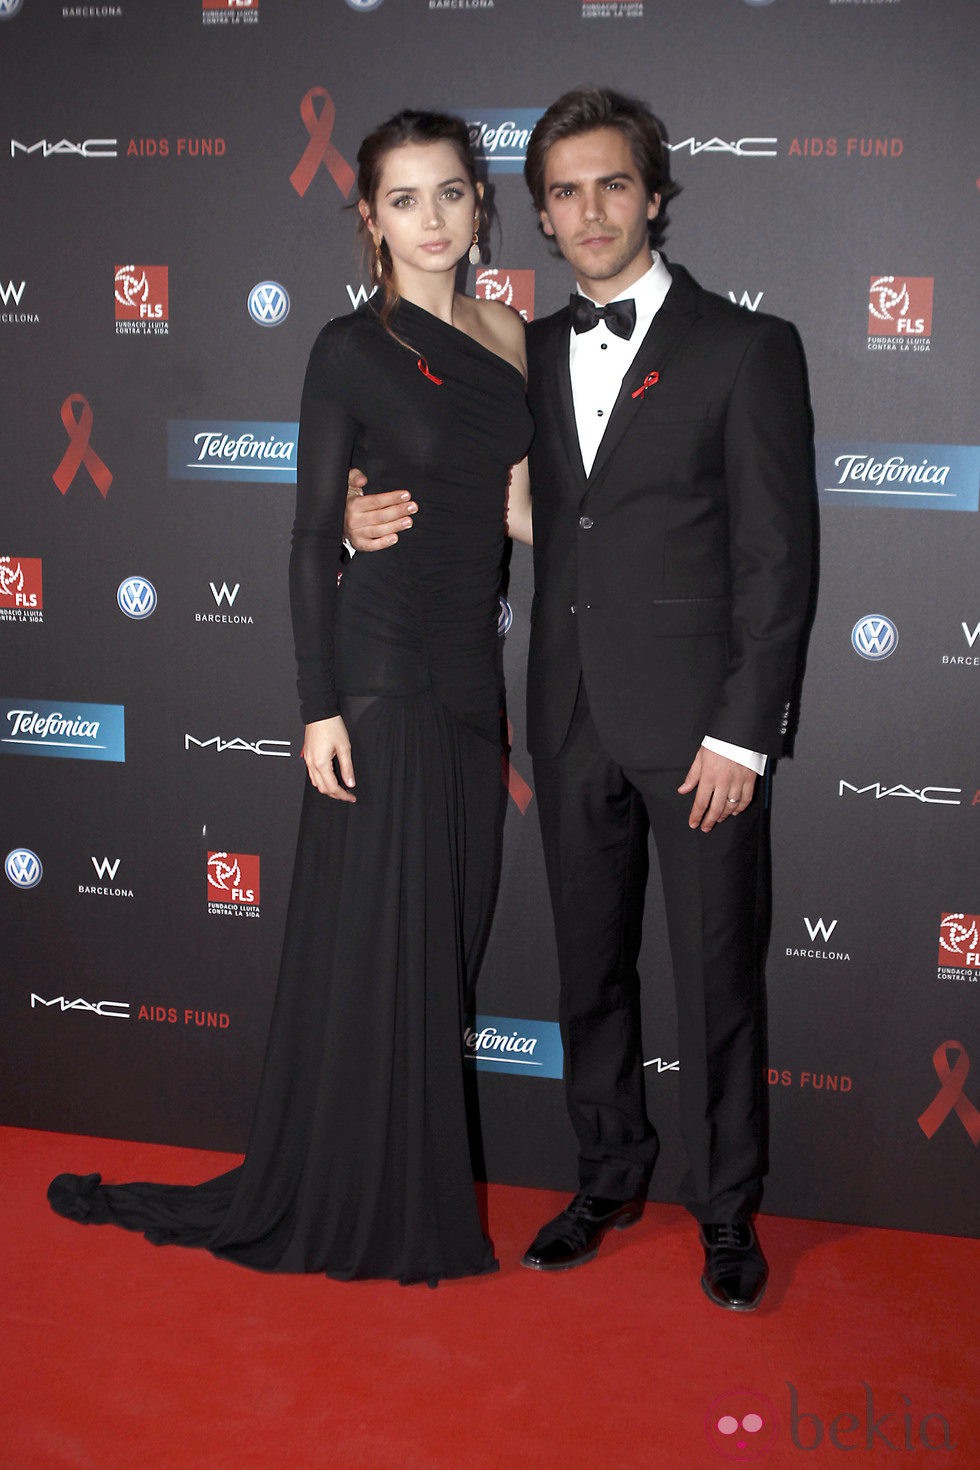 Ana de Armas y Marc Clotet en la gala de la Fundación Lluita contra el sida